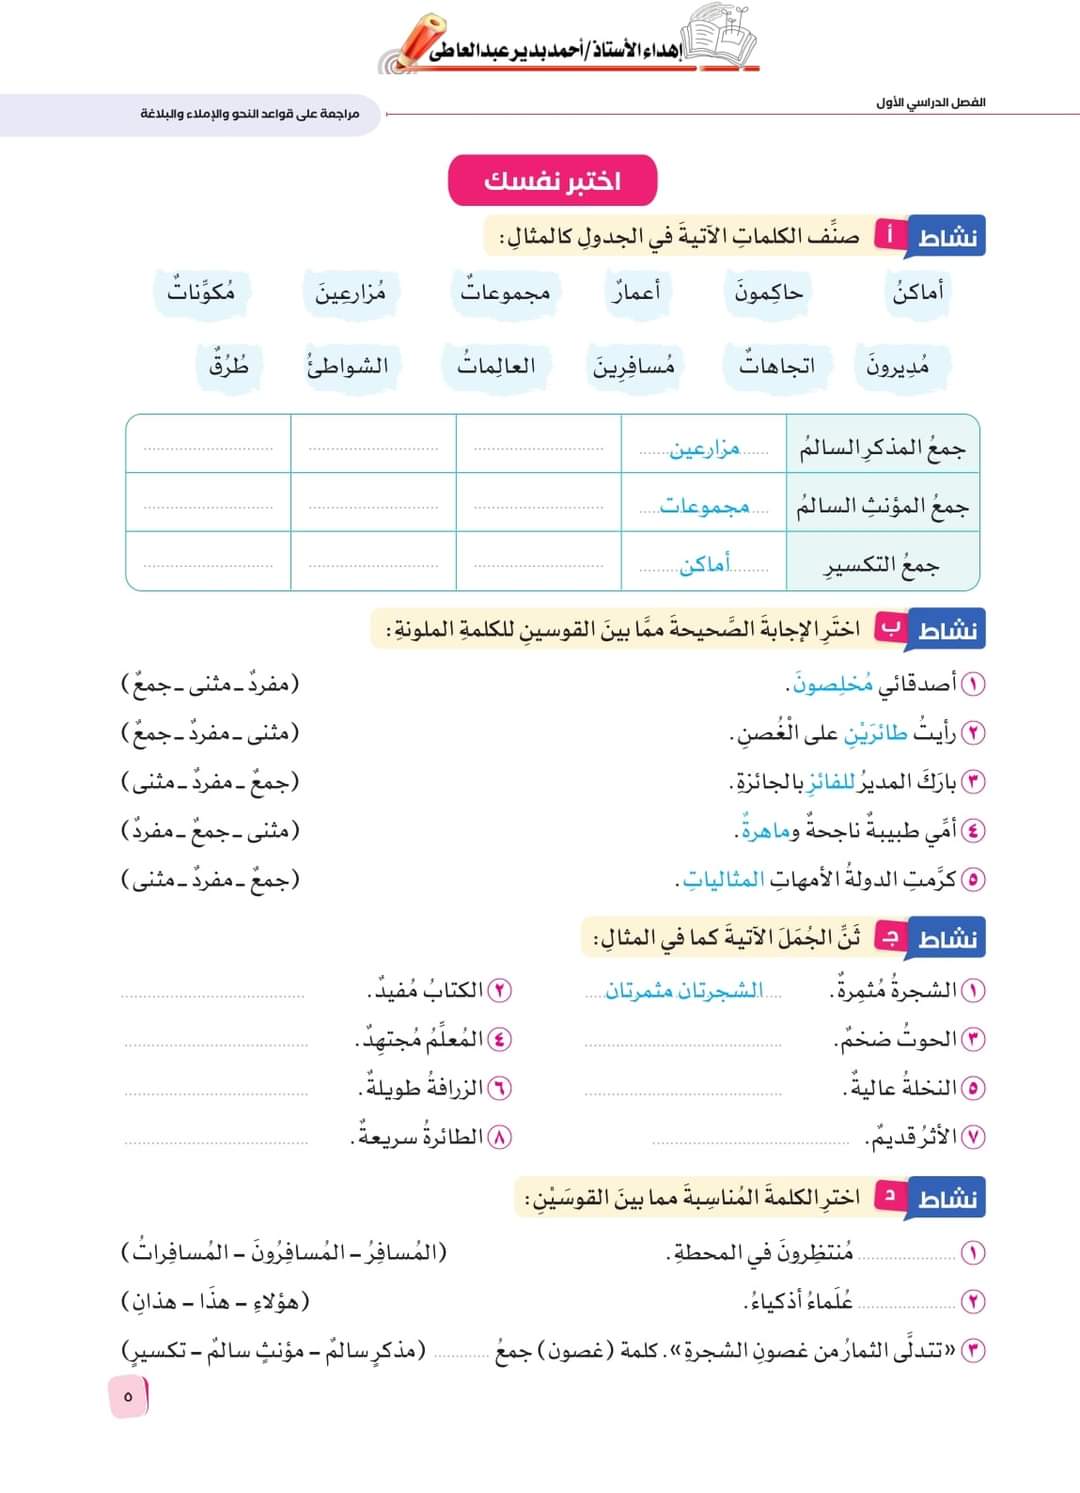 كتاب سلاح التلميذ في اللغة العربية للصف السادس الابتدائي 2024